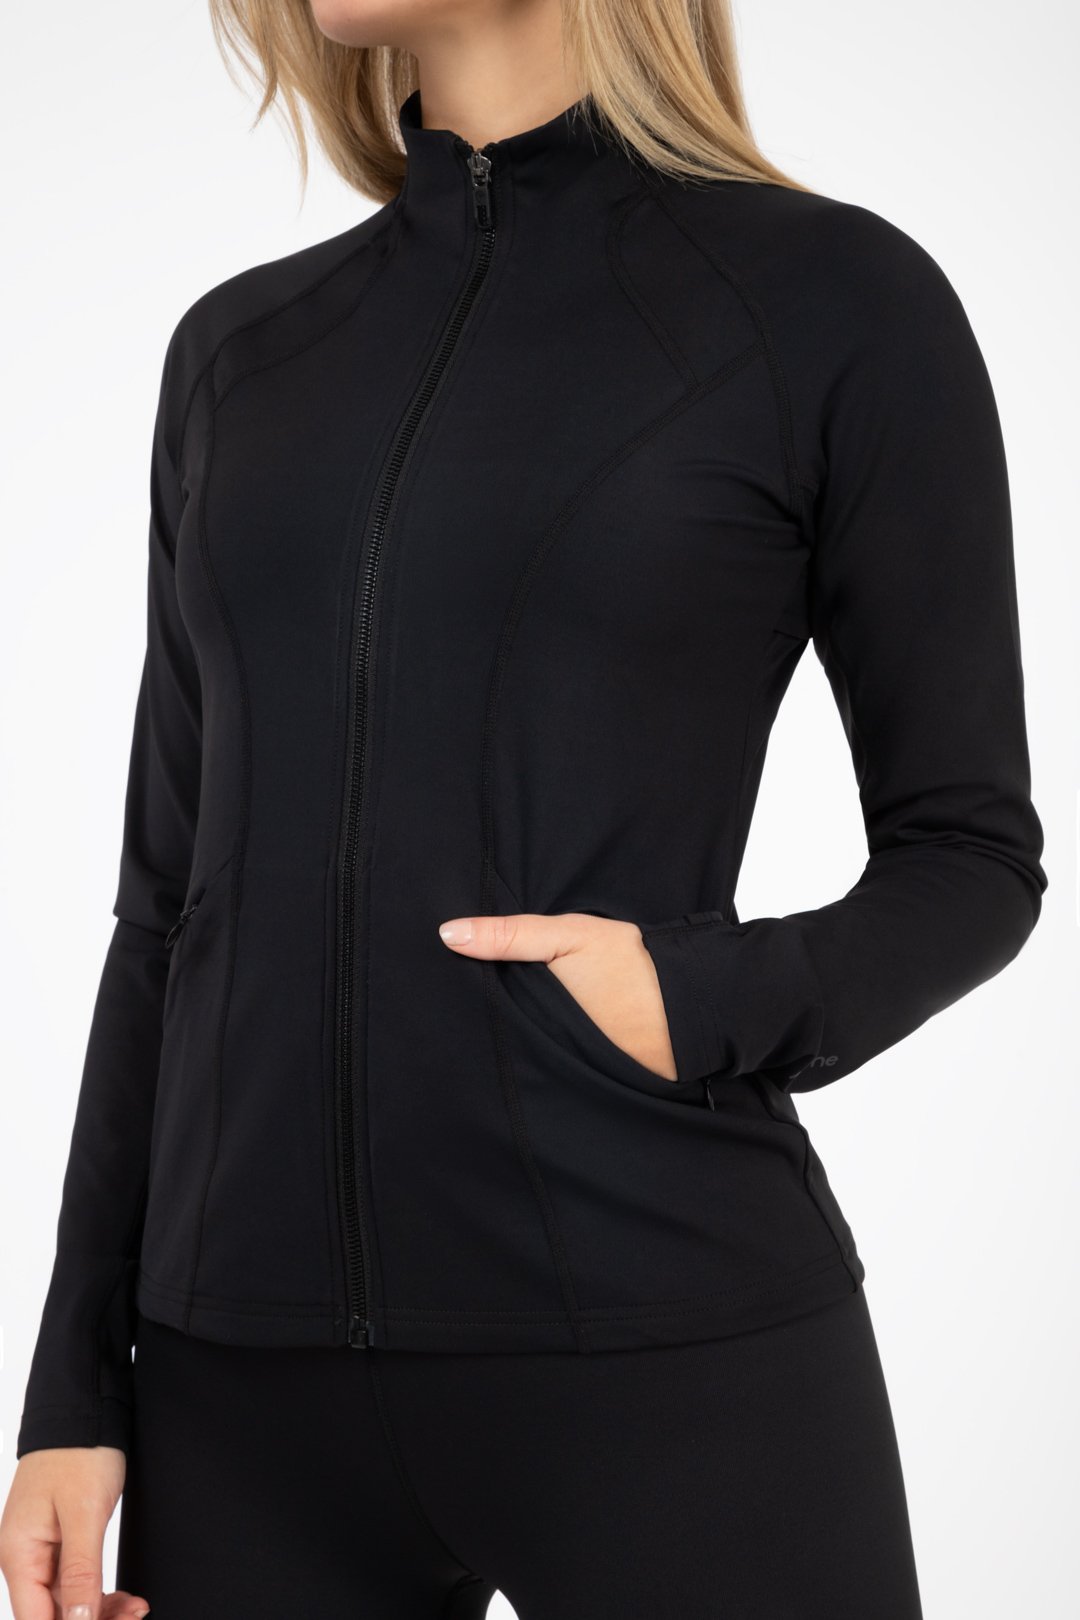 black friday salg - god og varm jakke med stretch 